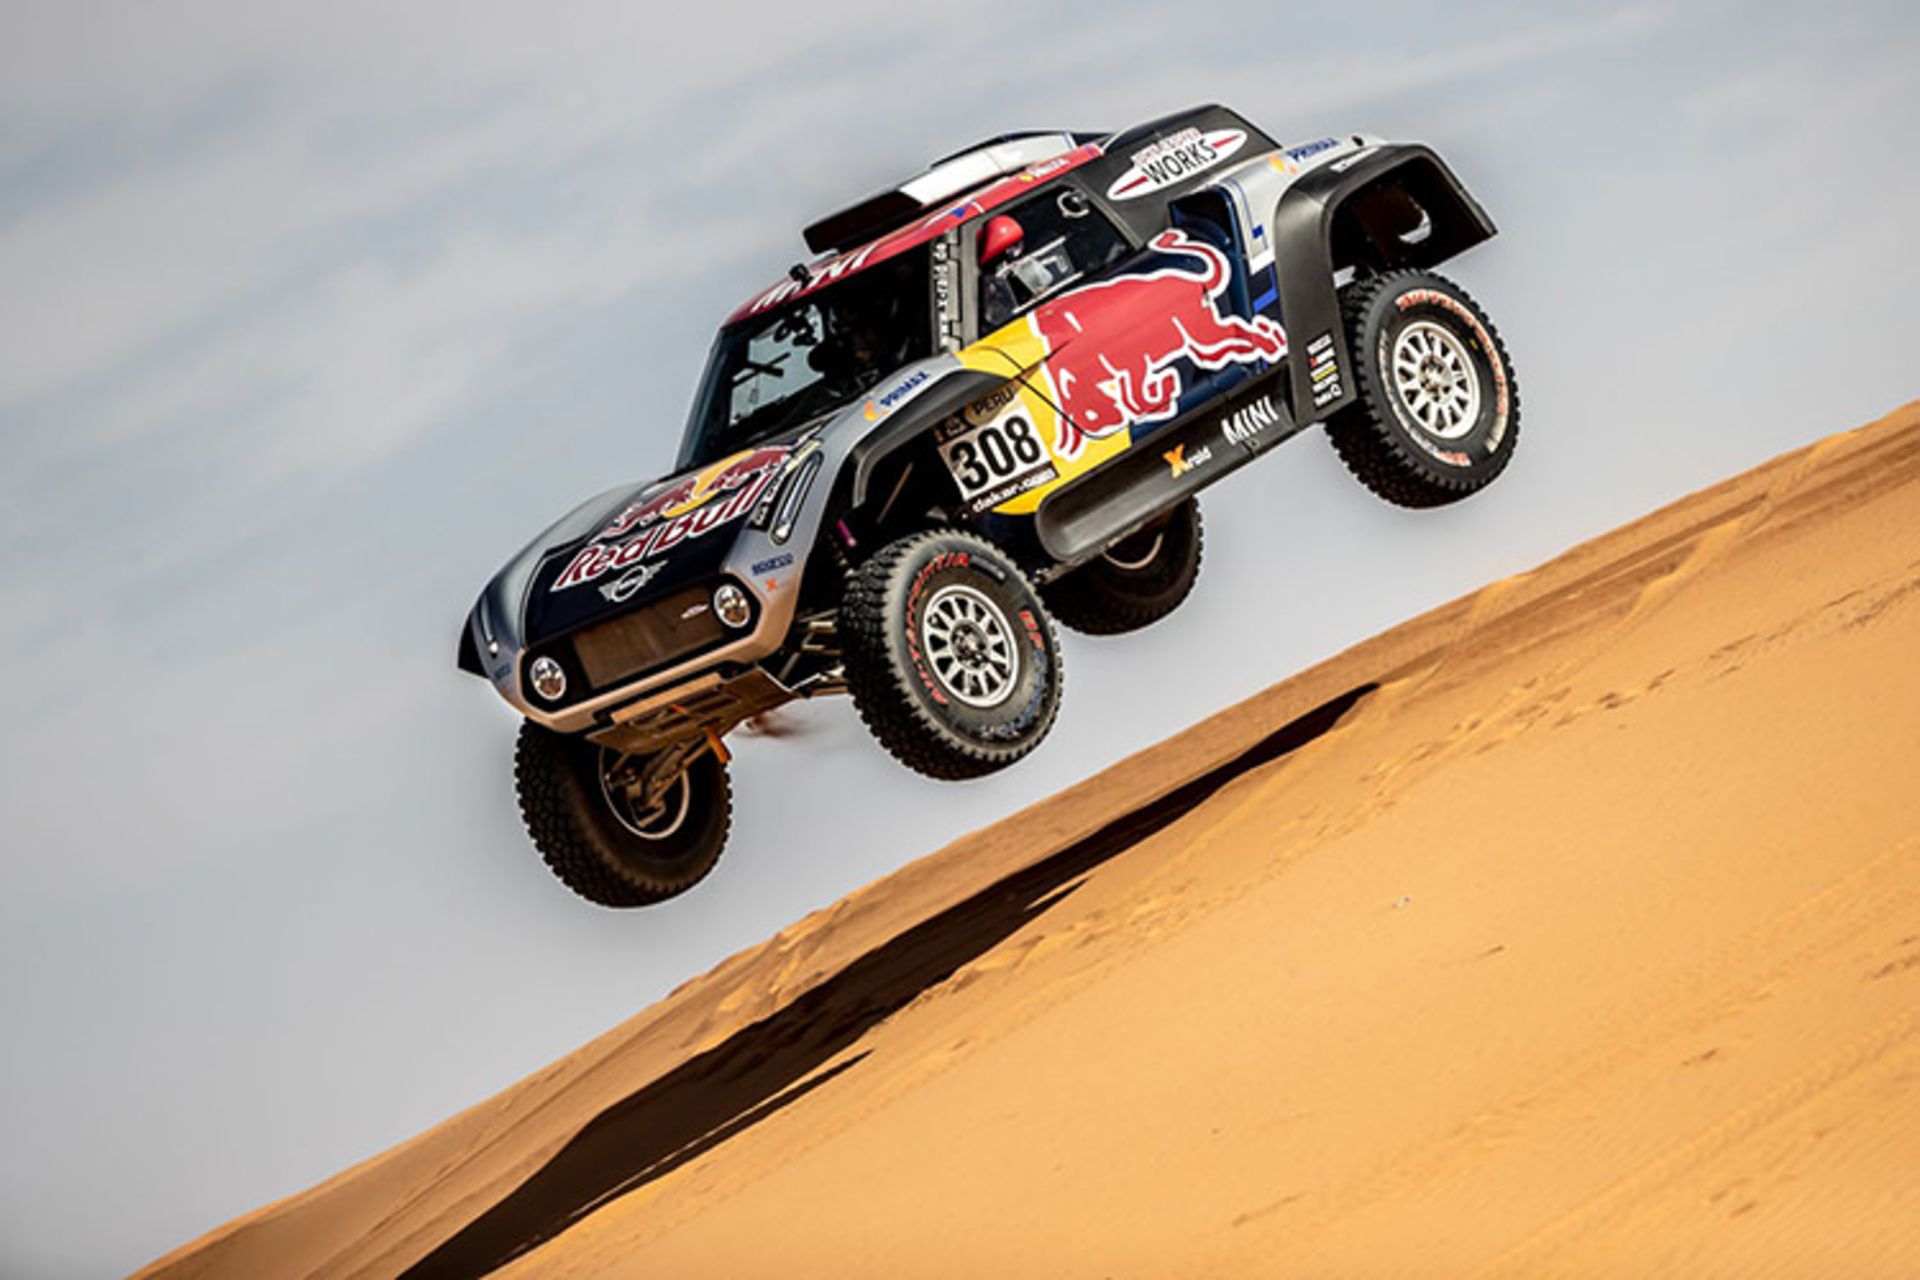 مرجع متخصصين ايران Carlos Sainz MINI Rally Dakar 2019 / كارلوس ساينز ميني رالي داكار